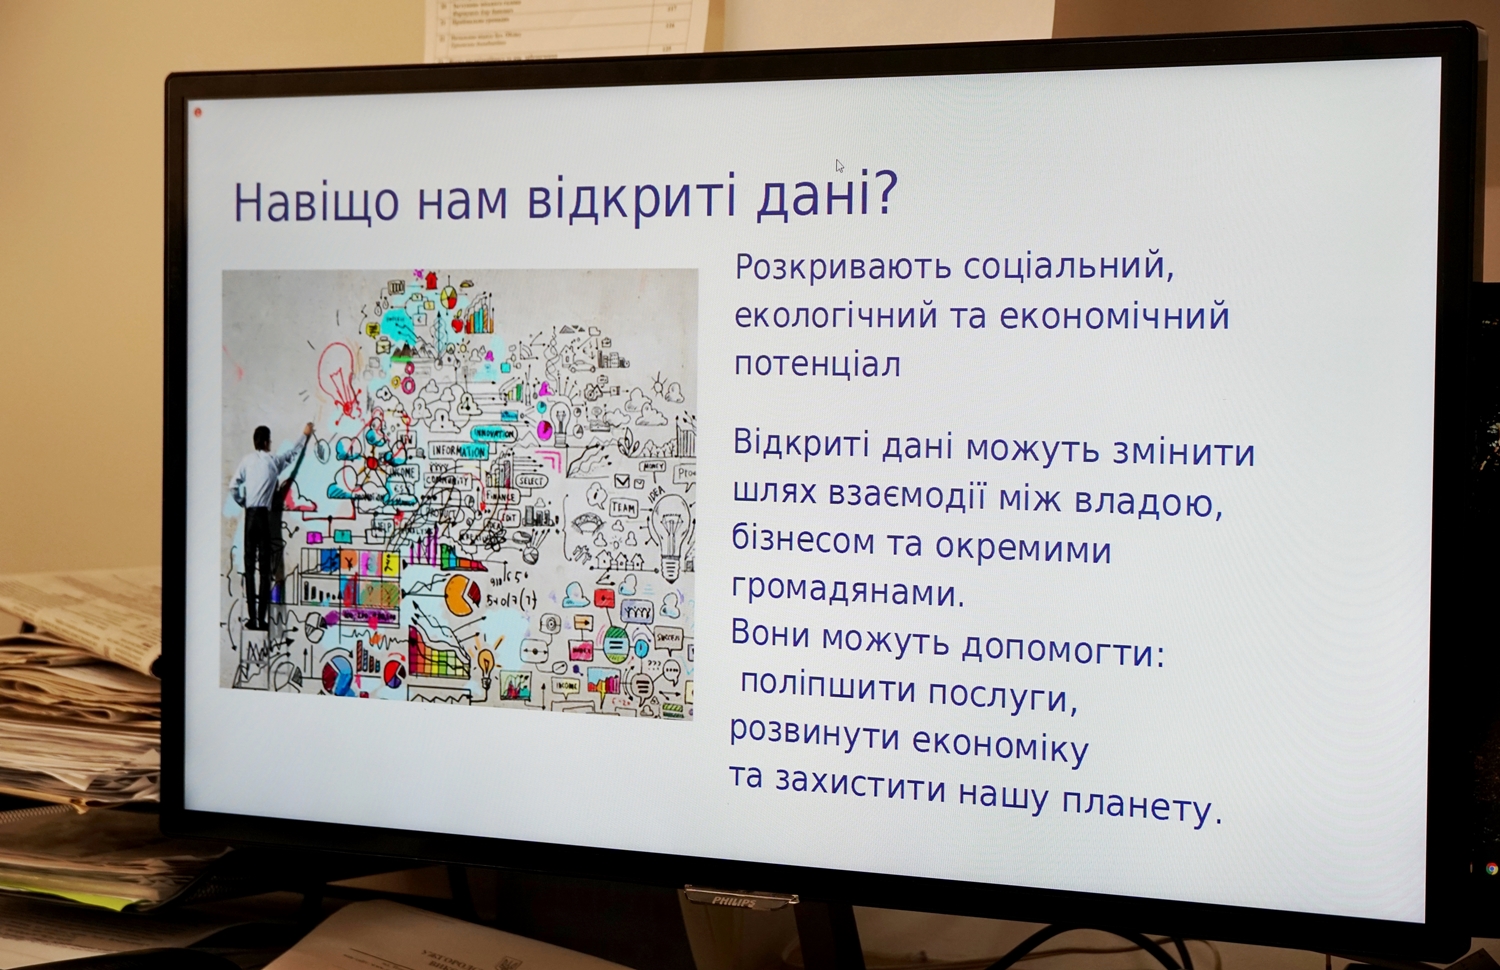 Працівники Ужгородської міськради взяли участь в онлайн-обговоренні щодо відкритих даних